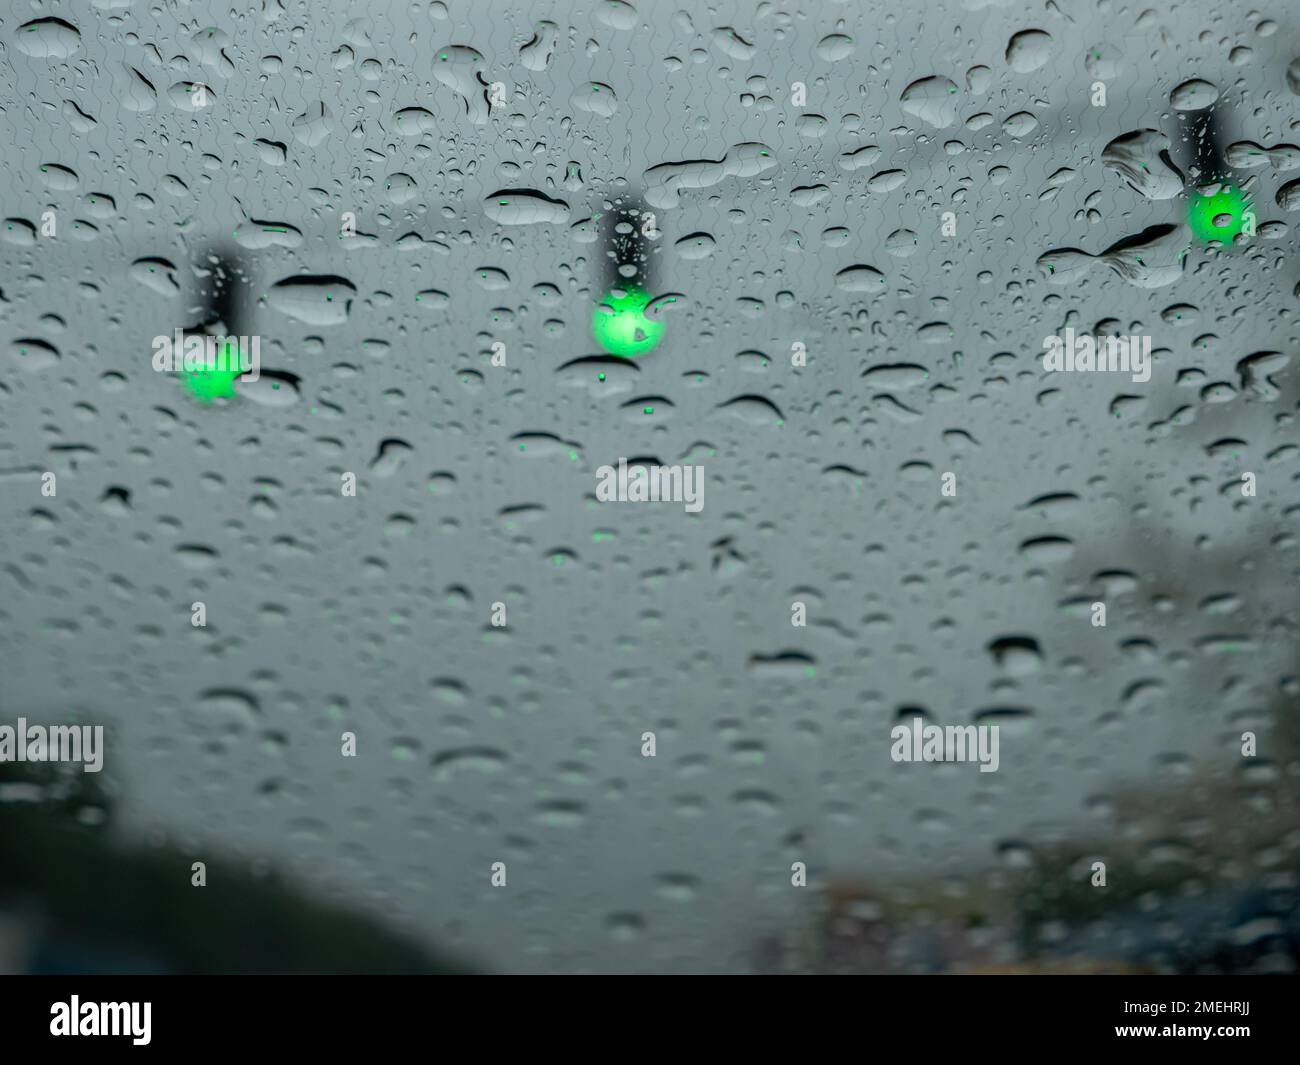 Nahaufnahme von Regentropfen auf einer Windschutzscheibe, verschwommene Ampeln mit grünen Signalen, die den Verkehr lenken. Ansicht vom Fahrersitz aus. Stockfoto